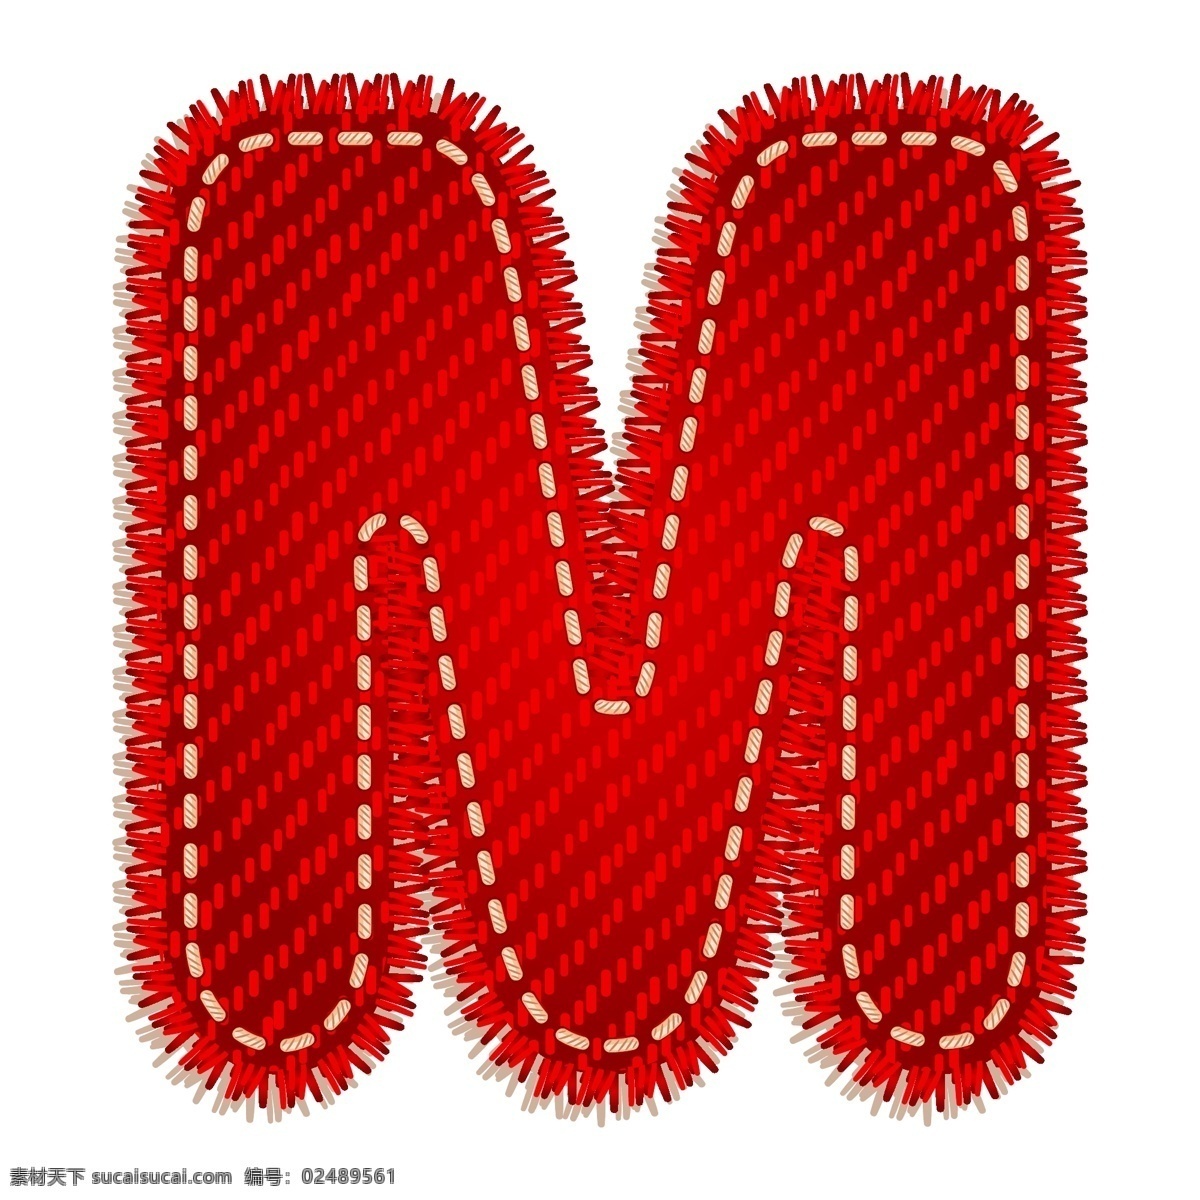 红色字母m 红色 字母 卡通字母 卡通图案 节日素材 m 书画文字 文化艺术 矢量素材 白色